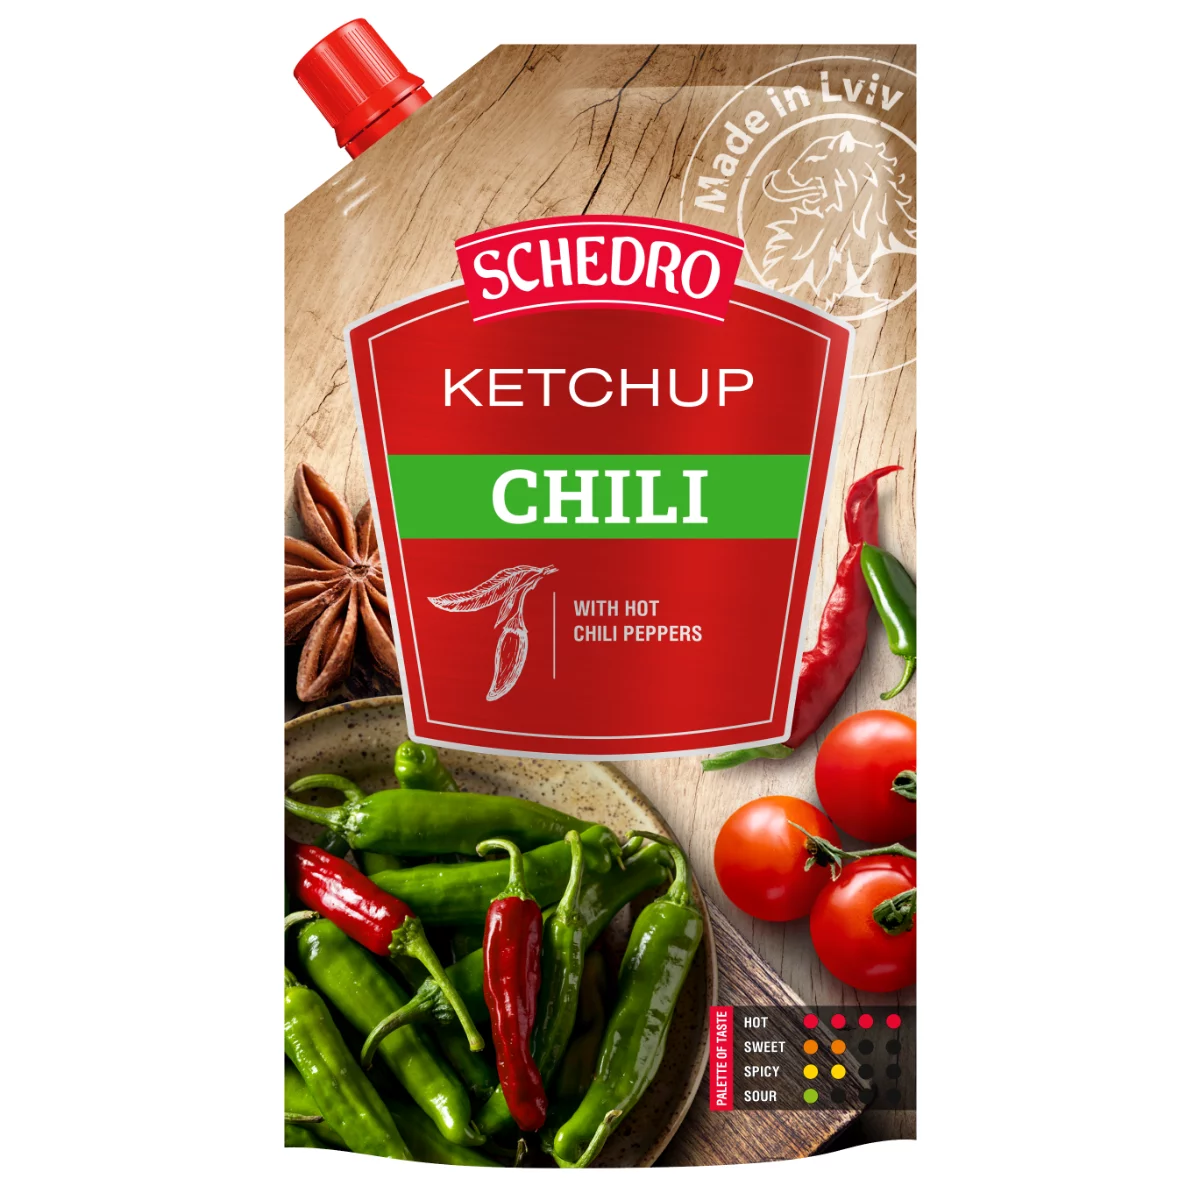 Schedro ketchup 250g chilis